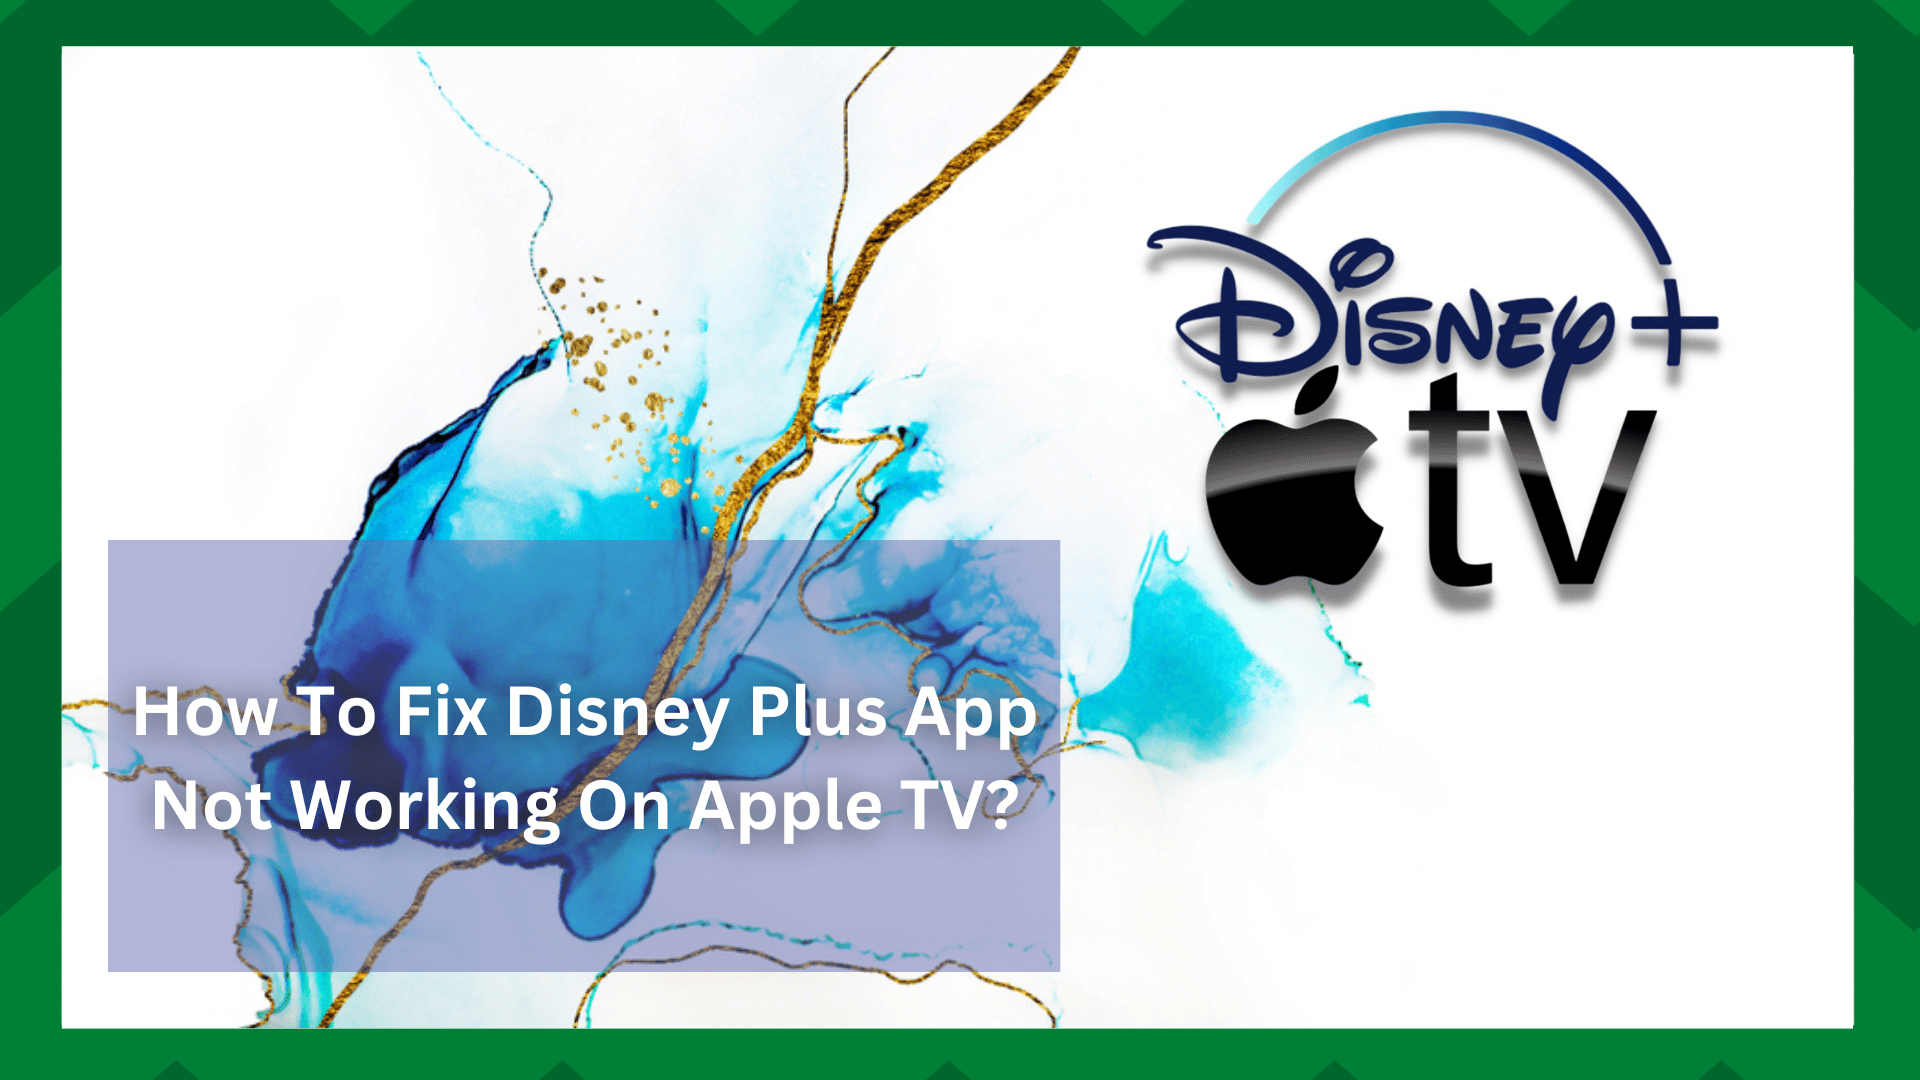 4 mahdollista ratkaisua siihen, että Disney Plus -sovellus ei toimi Apple TV:ssä